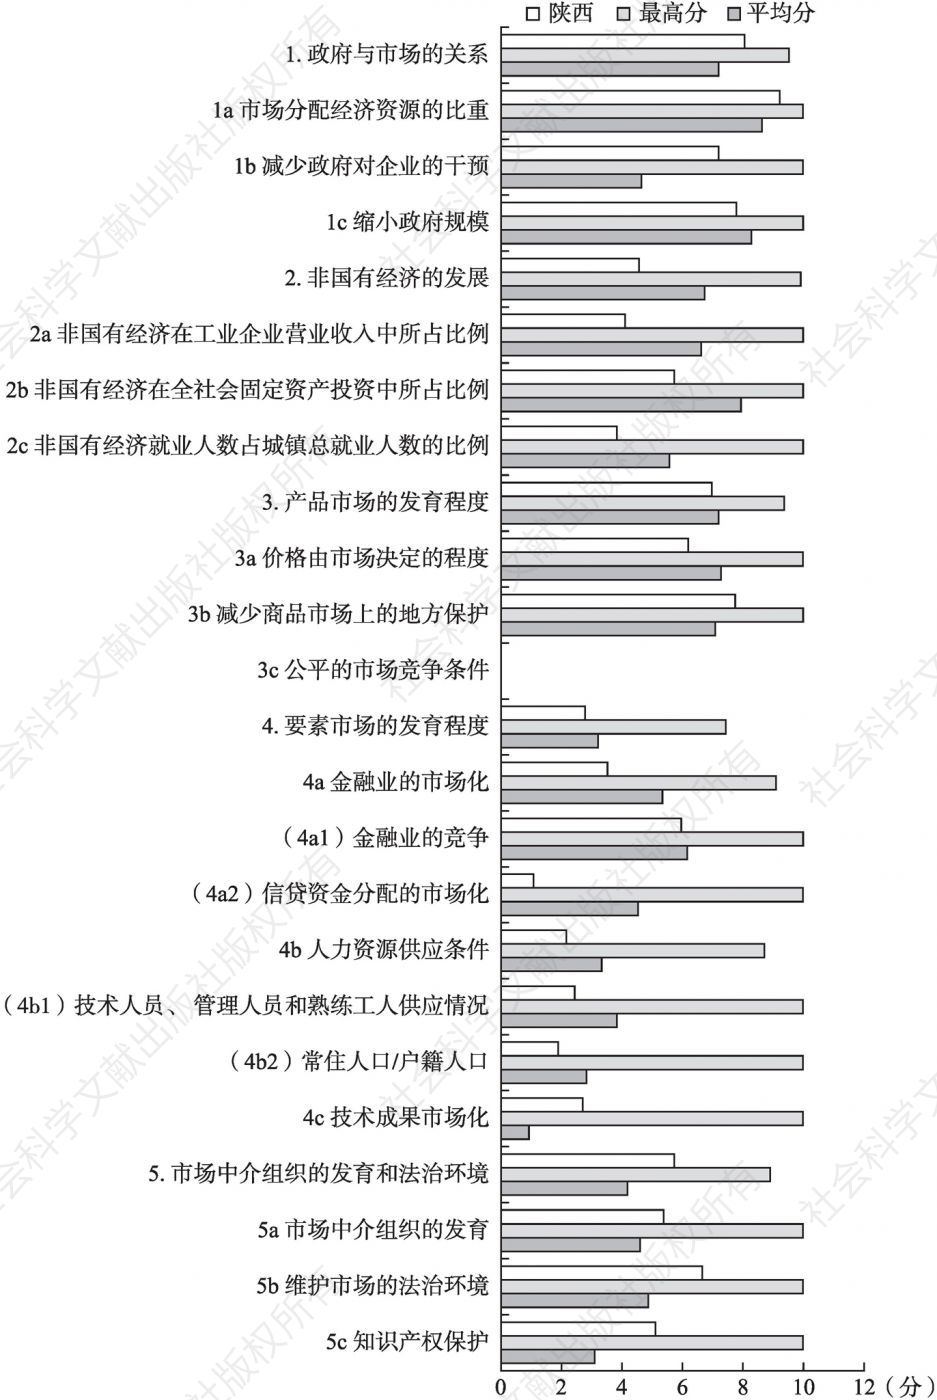 2016年陕西市场化各方面指数和分项指数与全国最高分及平均分的比较